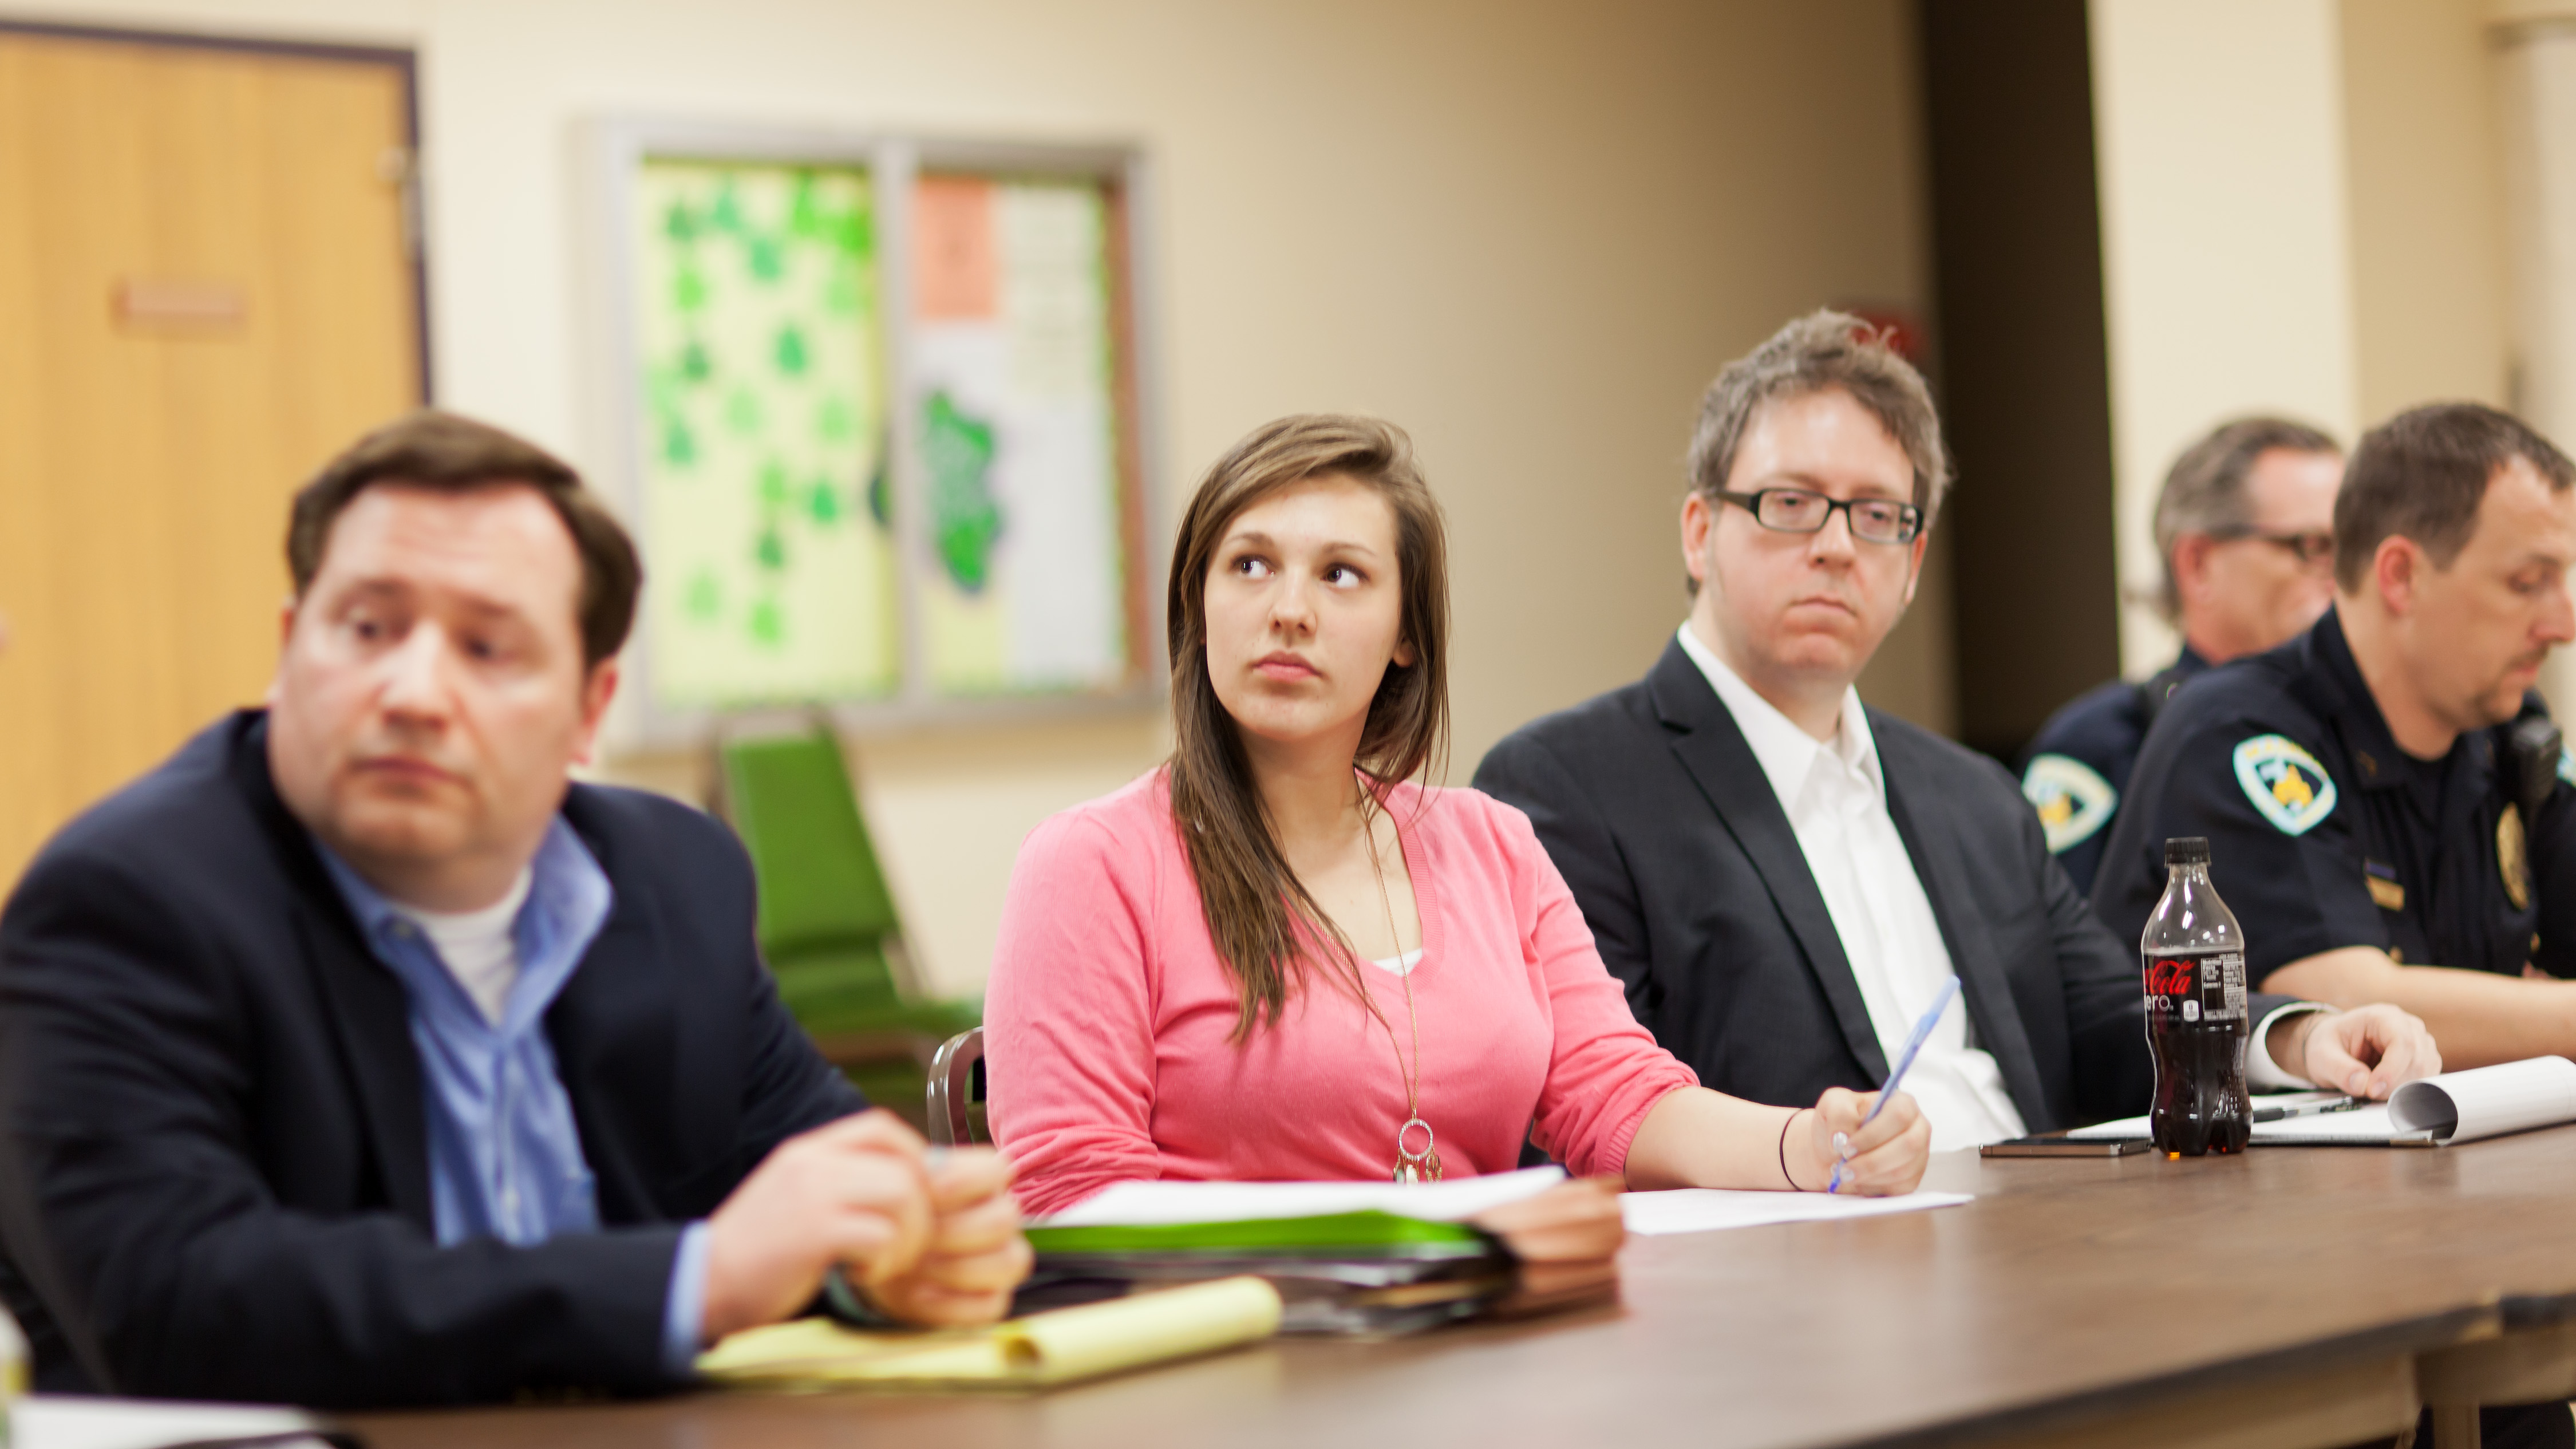 Hoe houd je je op kantoor staande tijdens vergaderingen? 14 onmisbare tips van een ex-Google-medewerker.